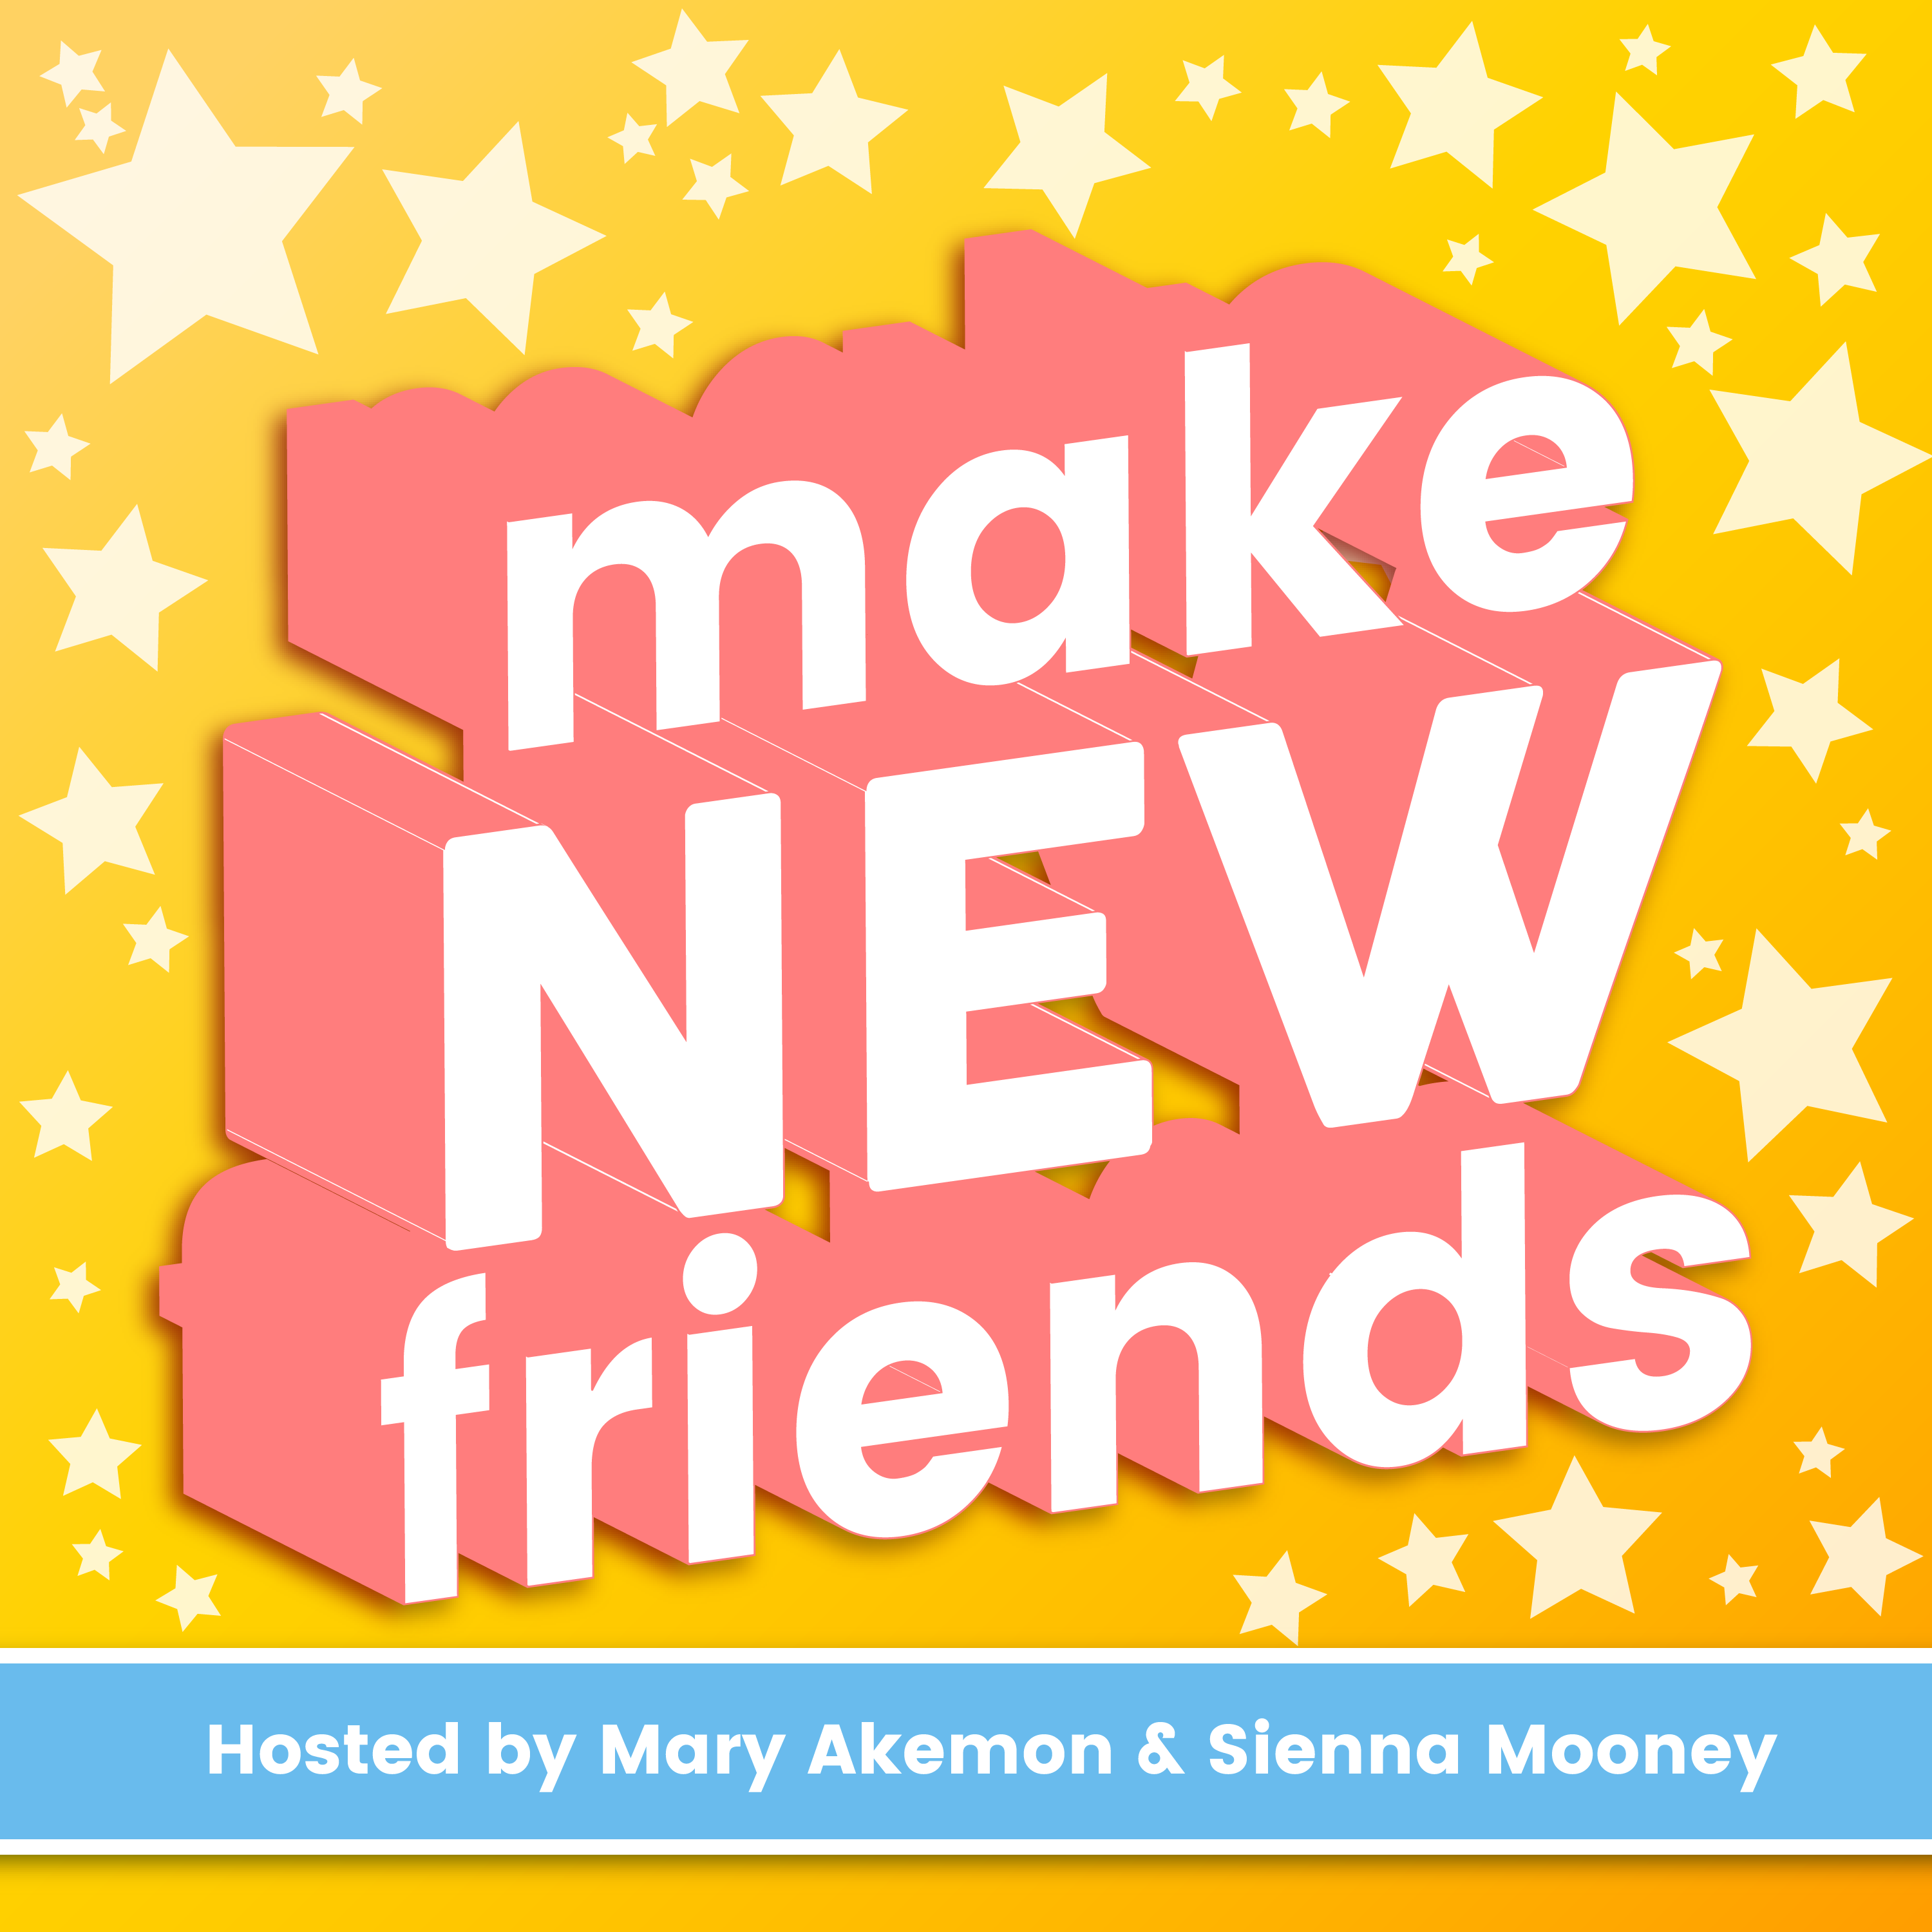 Friend hosting. New friend картинки. Making New friends. Let's make a New friend. Be a friend.